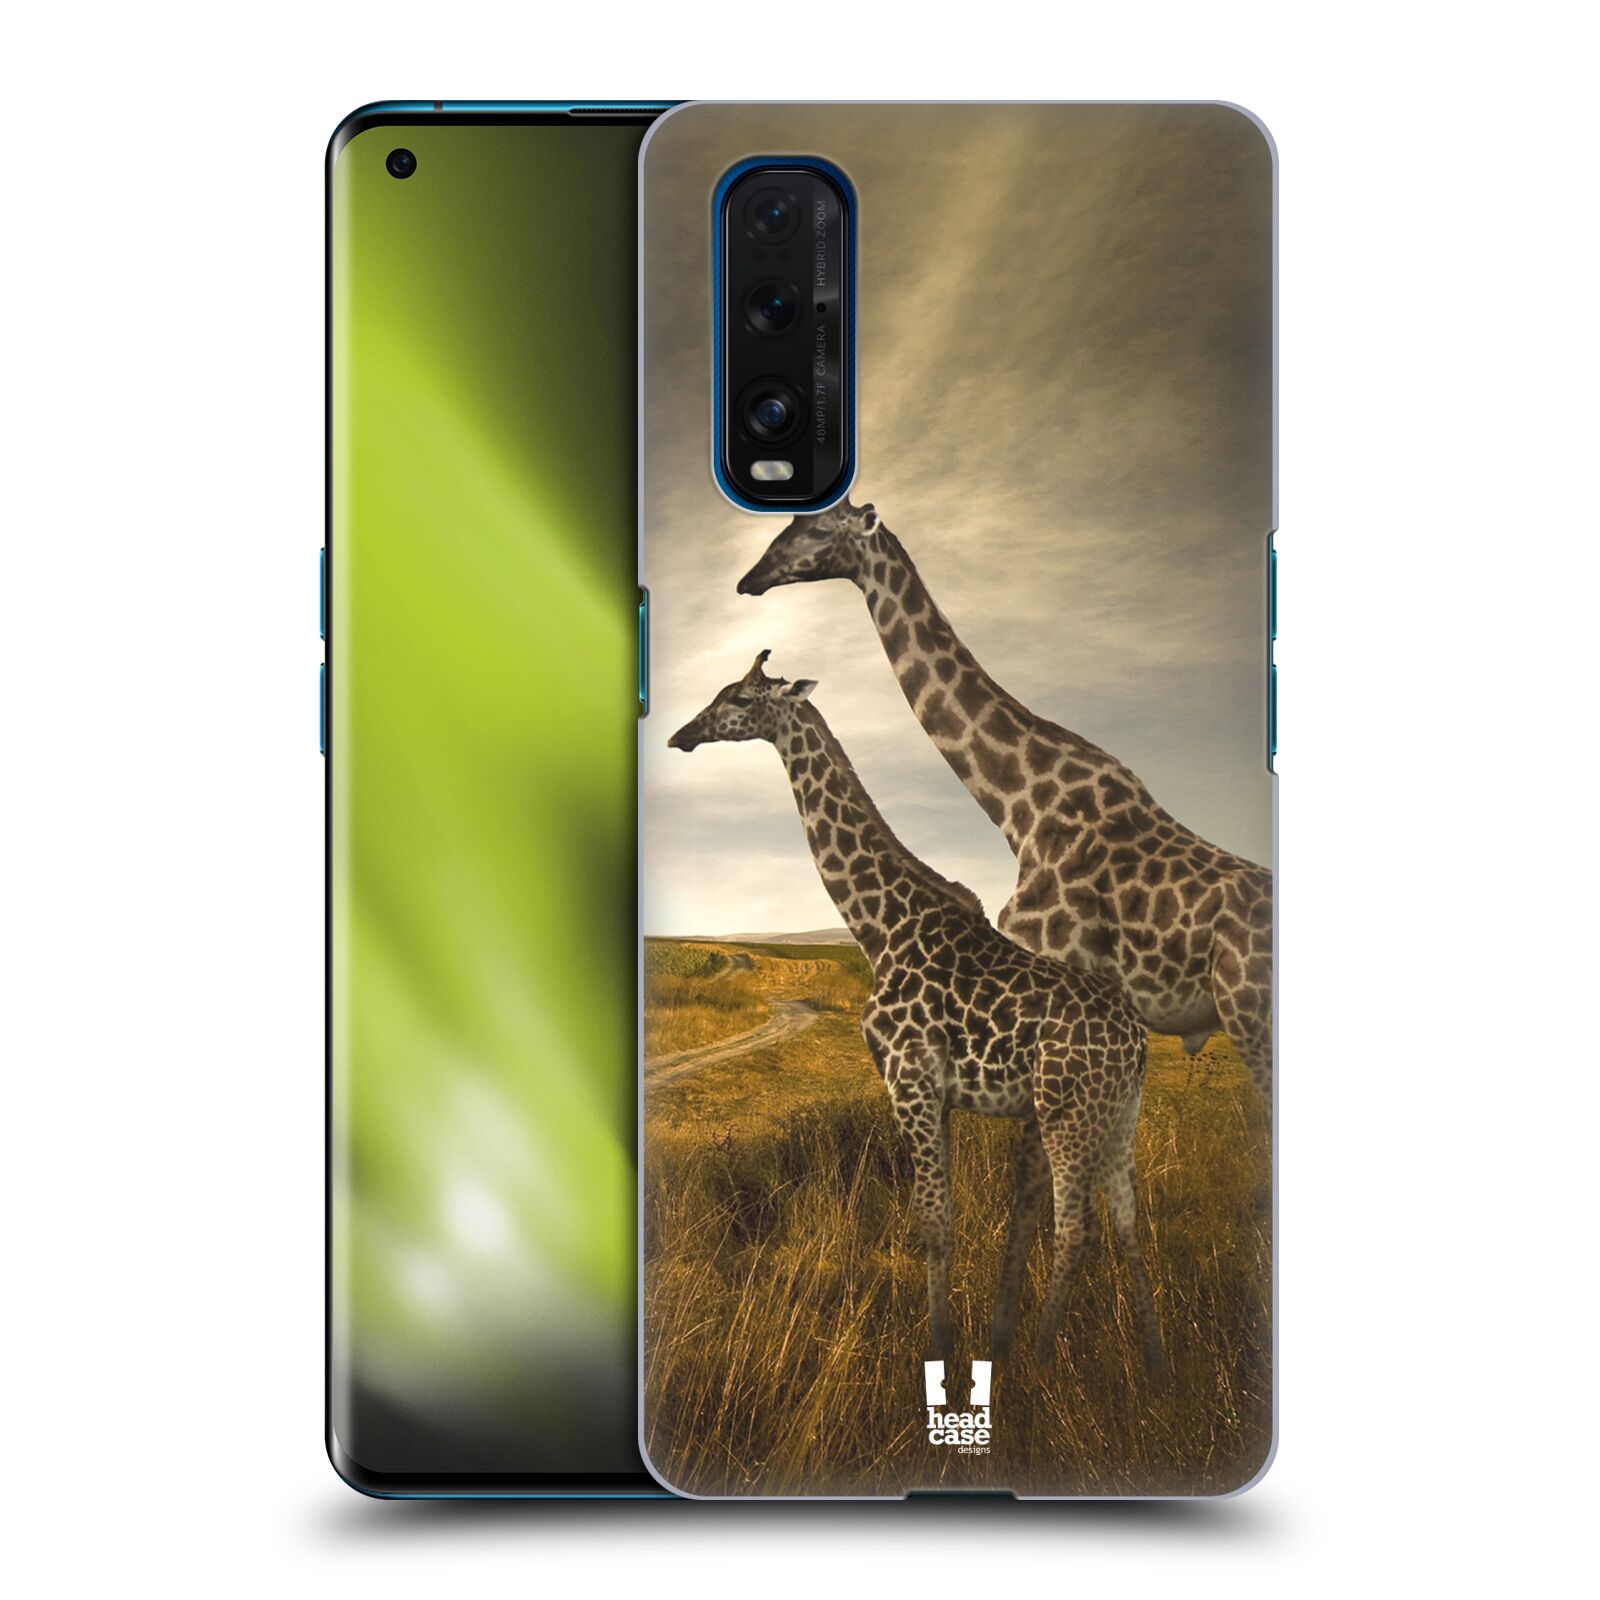 Zadní obal pro mobil Oppo Find X2 - HEAD CASE - Svět zvířat žirafy